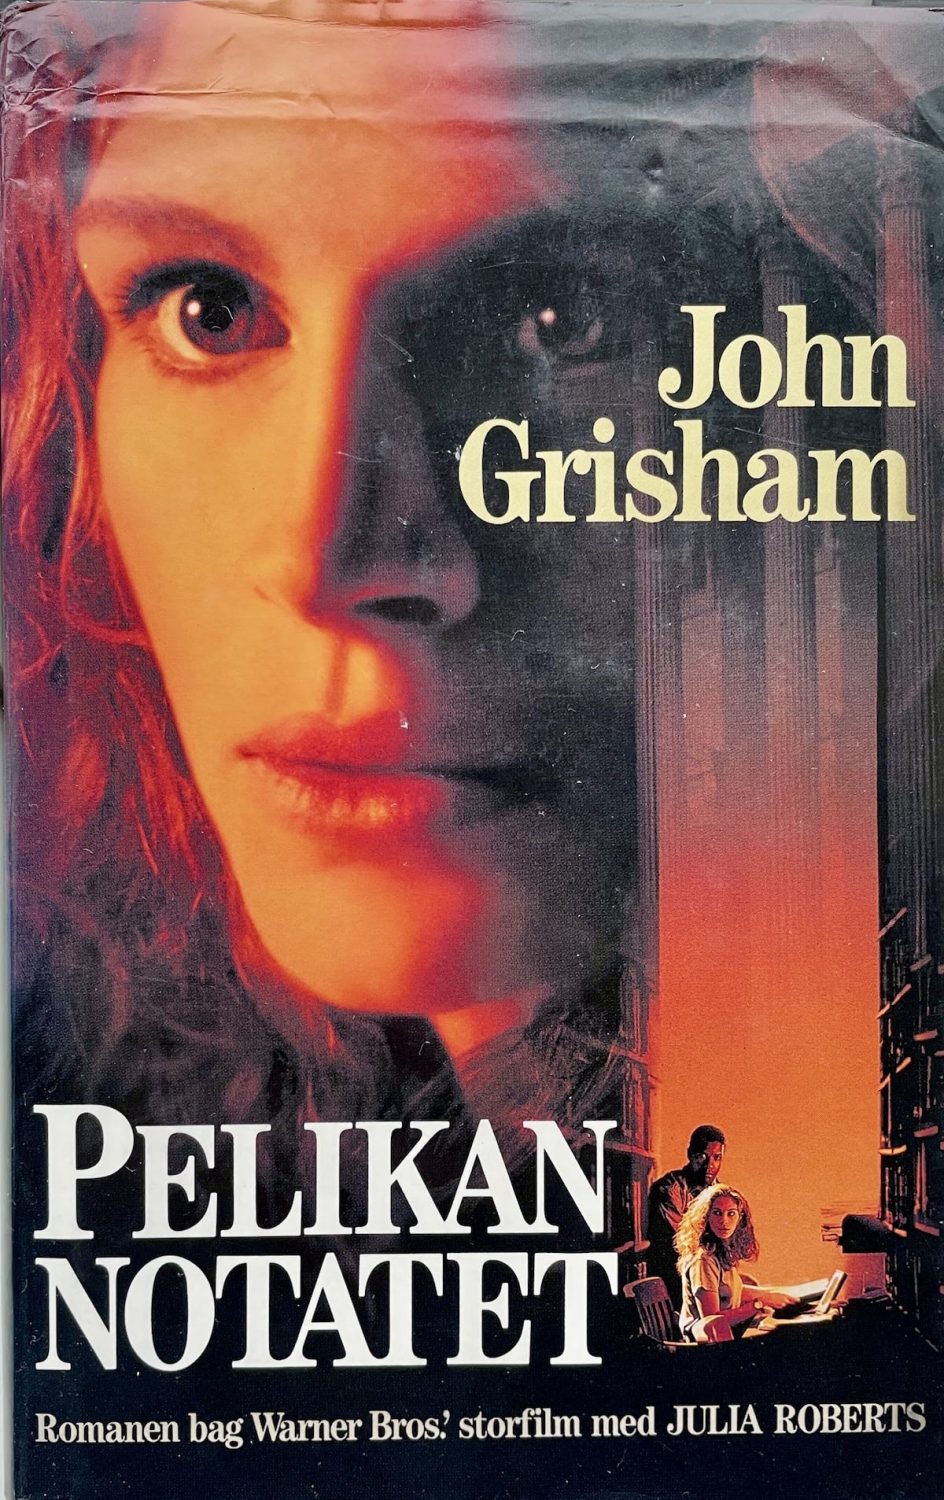 Pelikan notatet, John Grisham, brugt bog